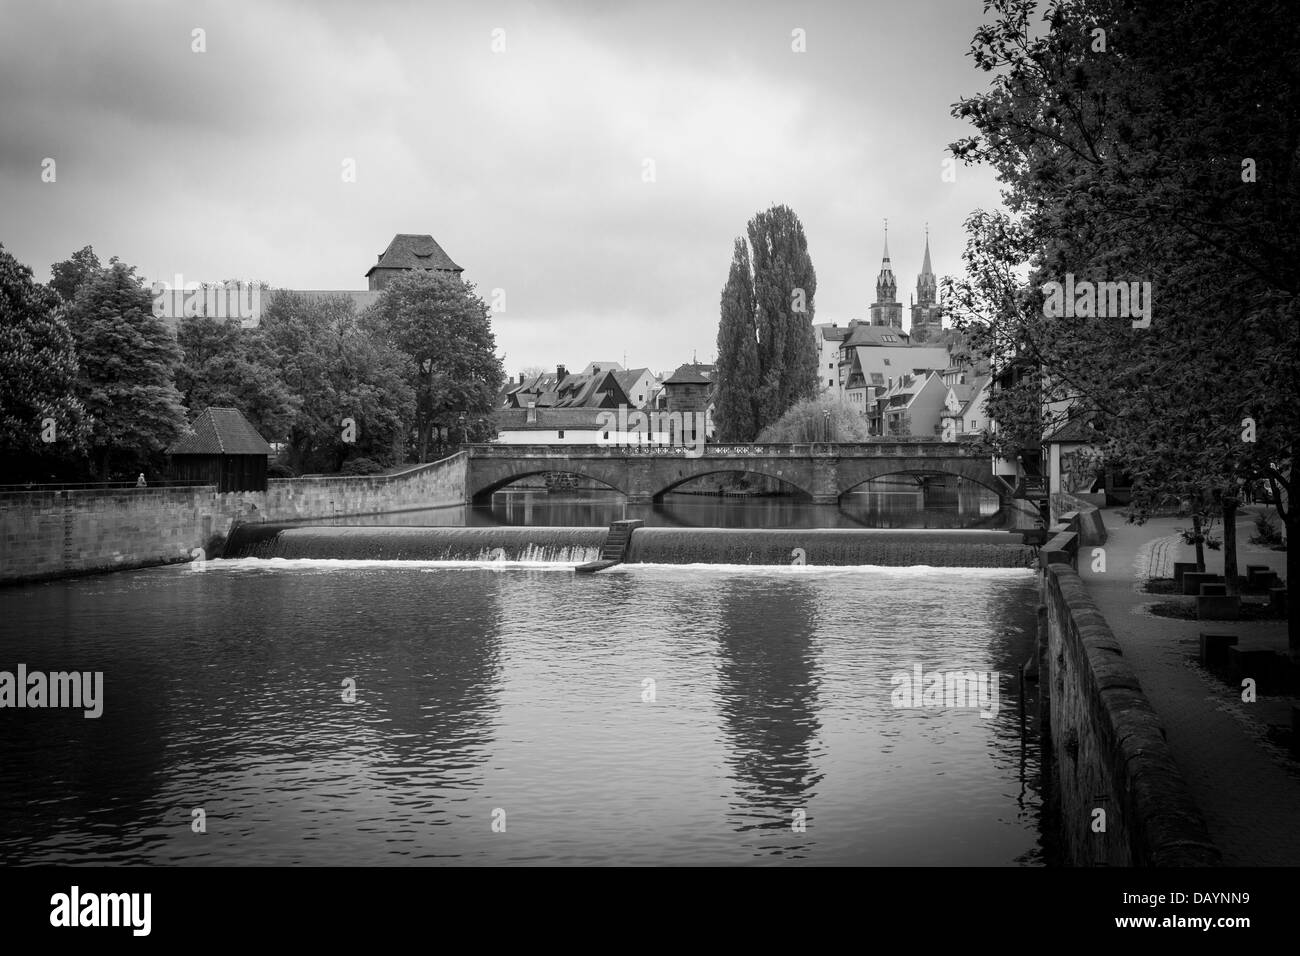 Fiume Pergnitz, Norimberga, Germania, Europa. Immagine in bianco e nero del Maxbridge tratto di fiume. Foto Stock